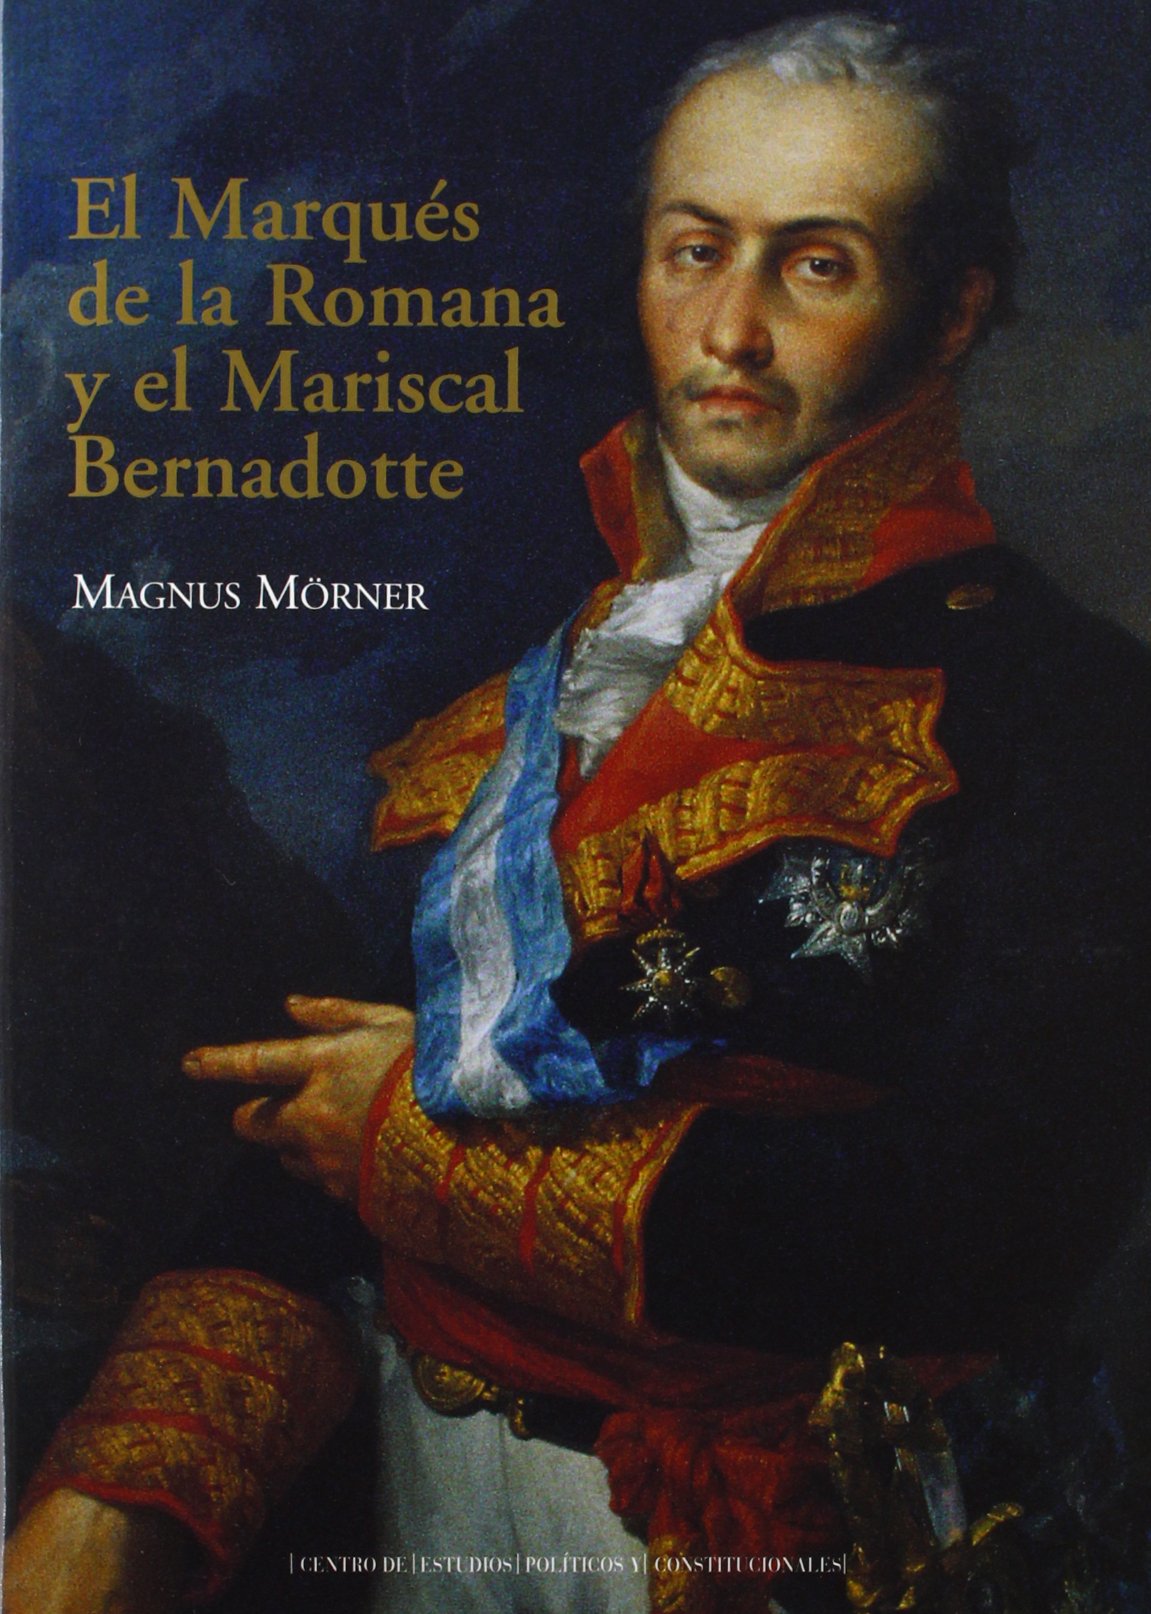 El marqués de la Romana y el mariscal Bernadotte